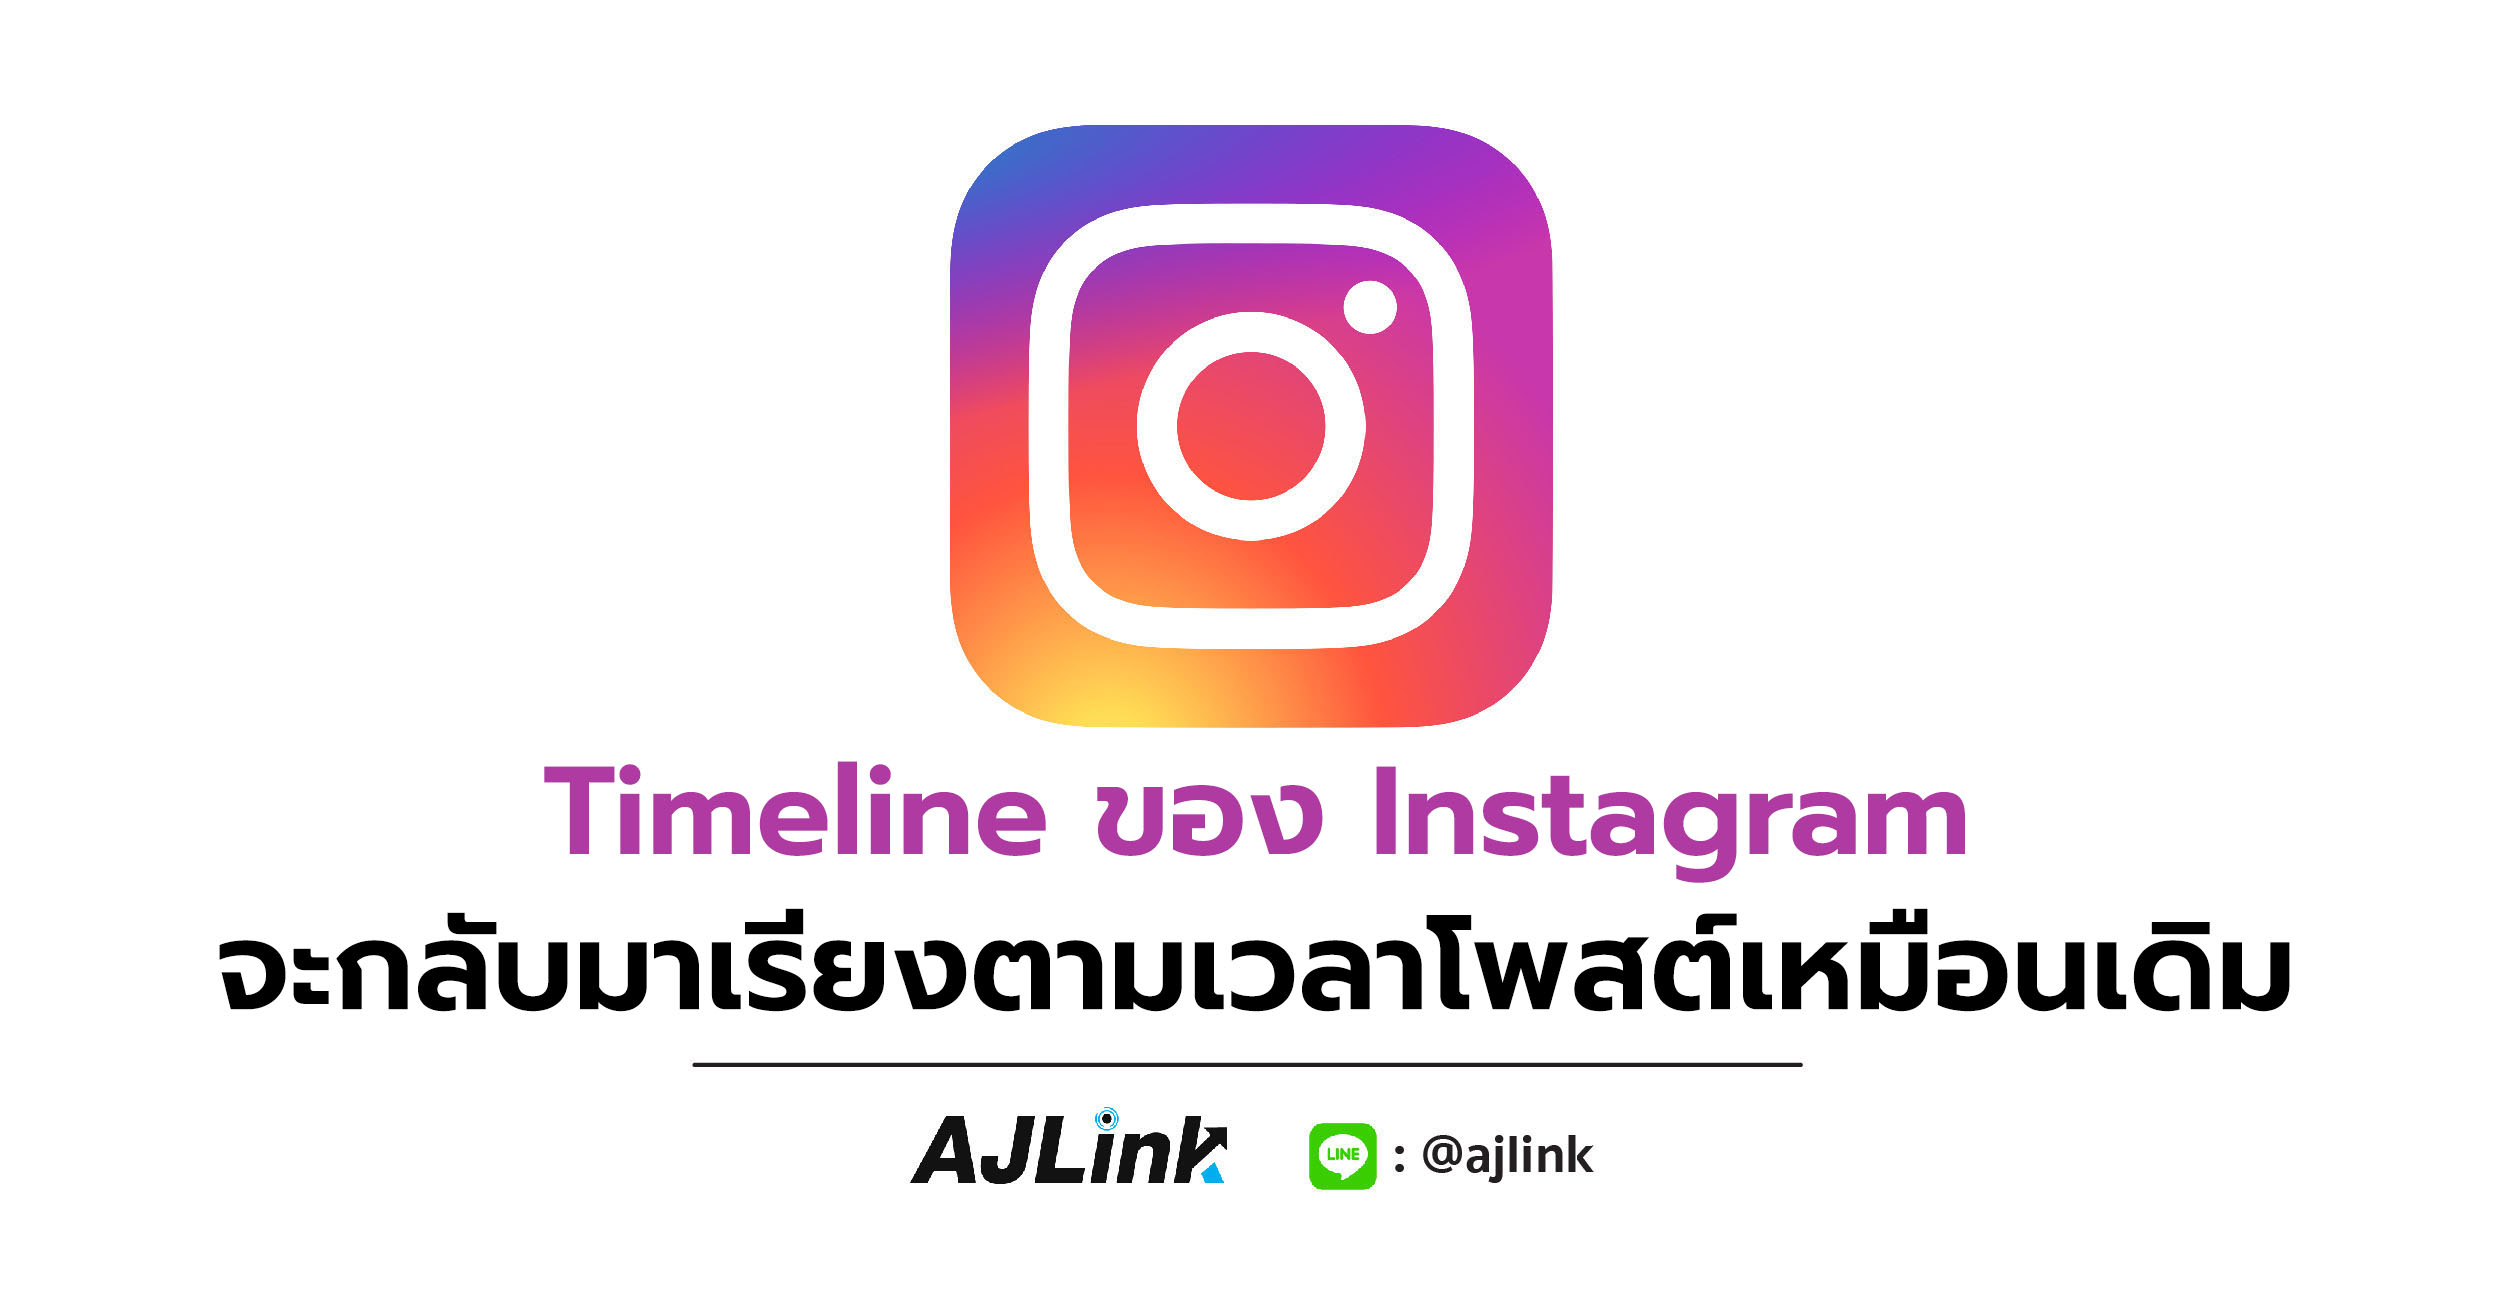 Timeline ของ Instagram จะกลับมาเรียงตามเวลาโพสต์เหมือนเดิม